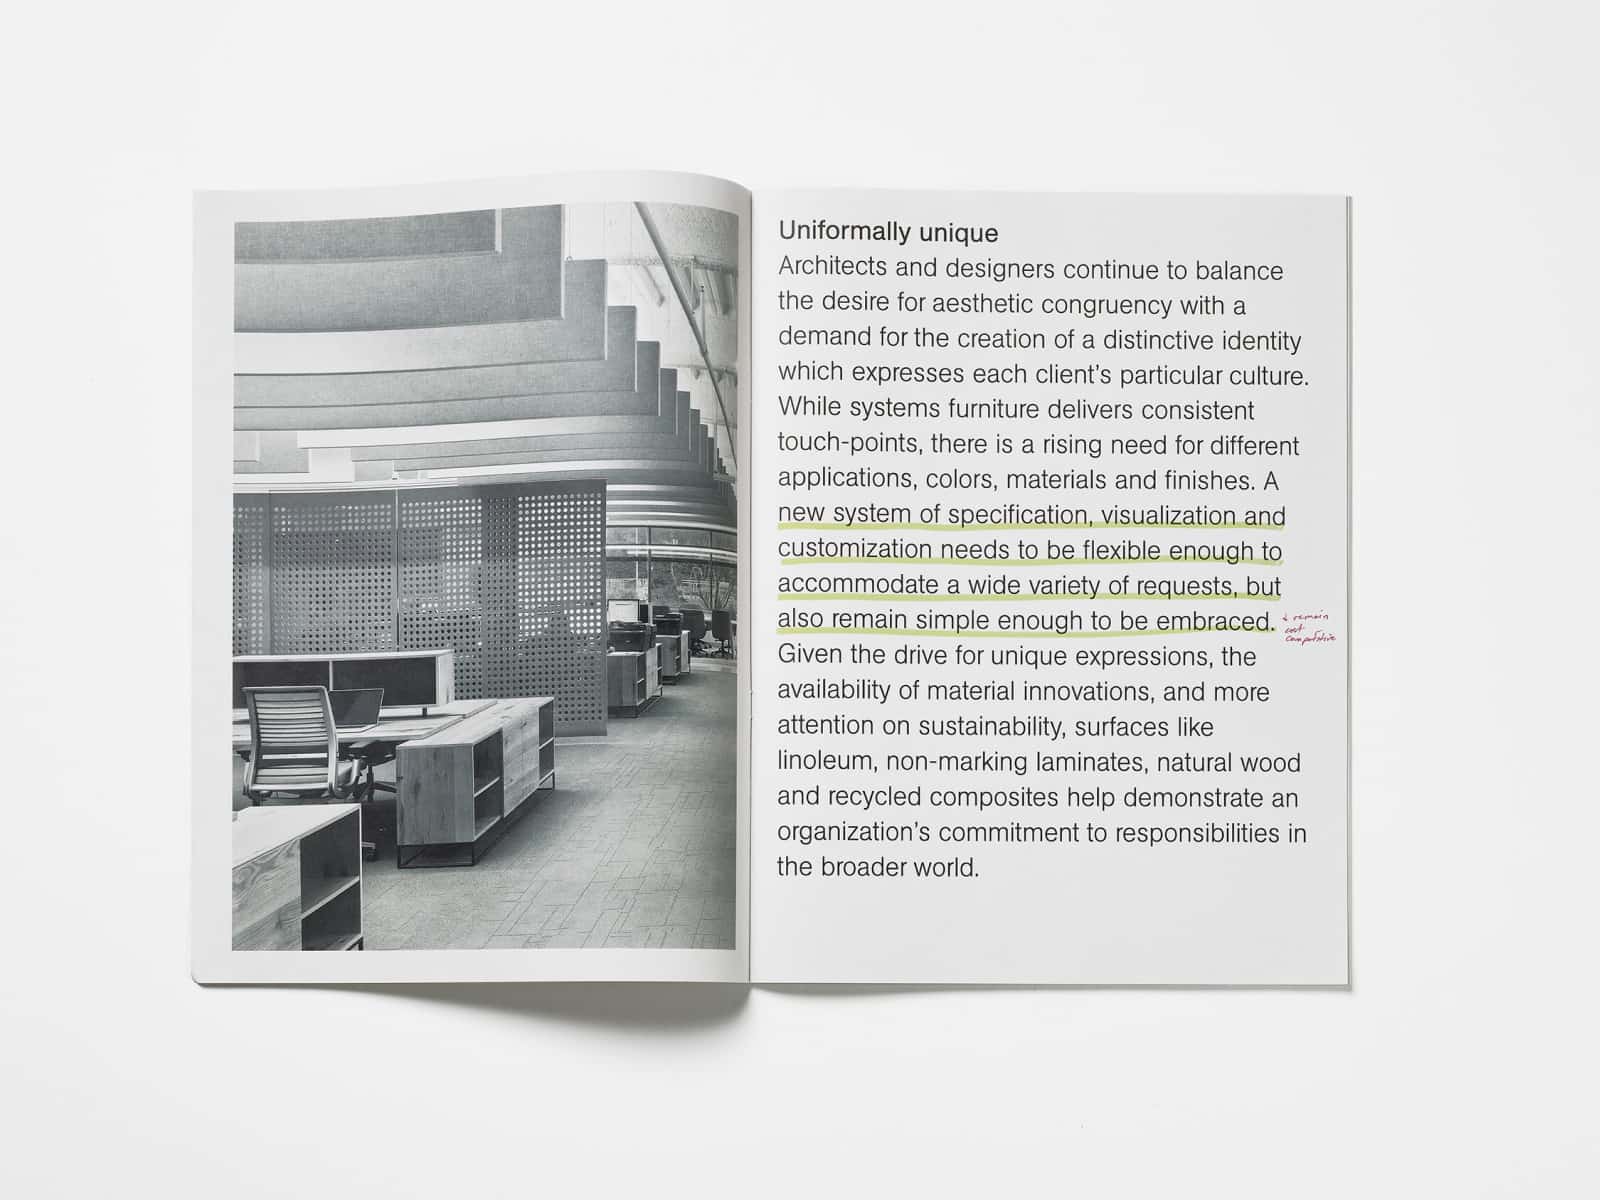 Imagem das páginas da revista de design Horizon com produtos que se tornariam a Coleção para espaços de trabalho OE1.